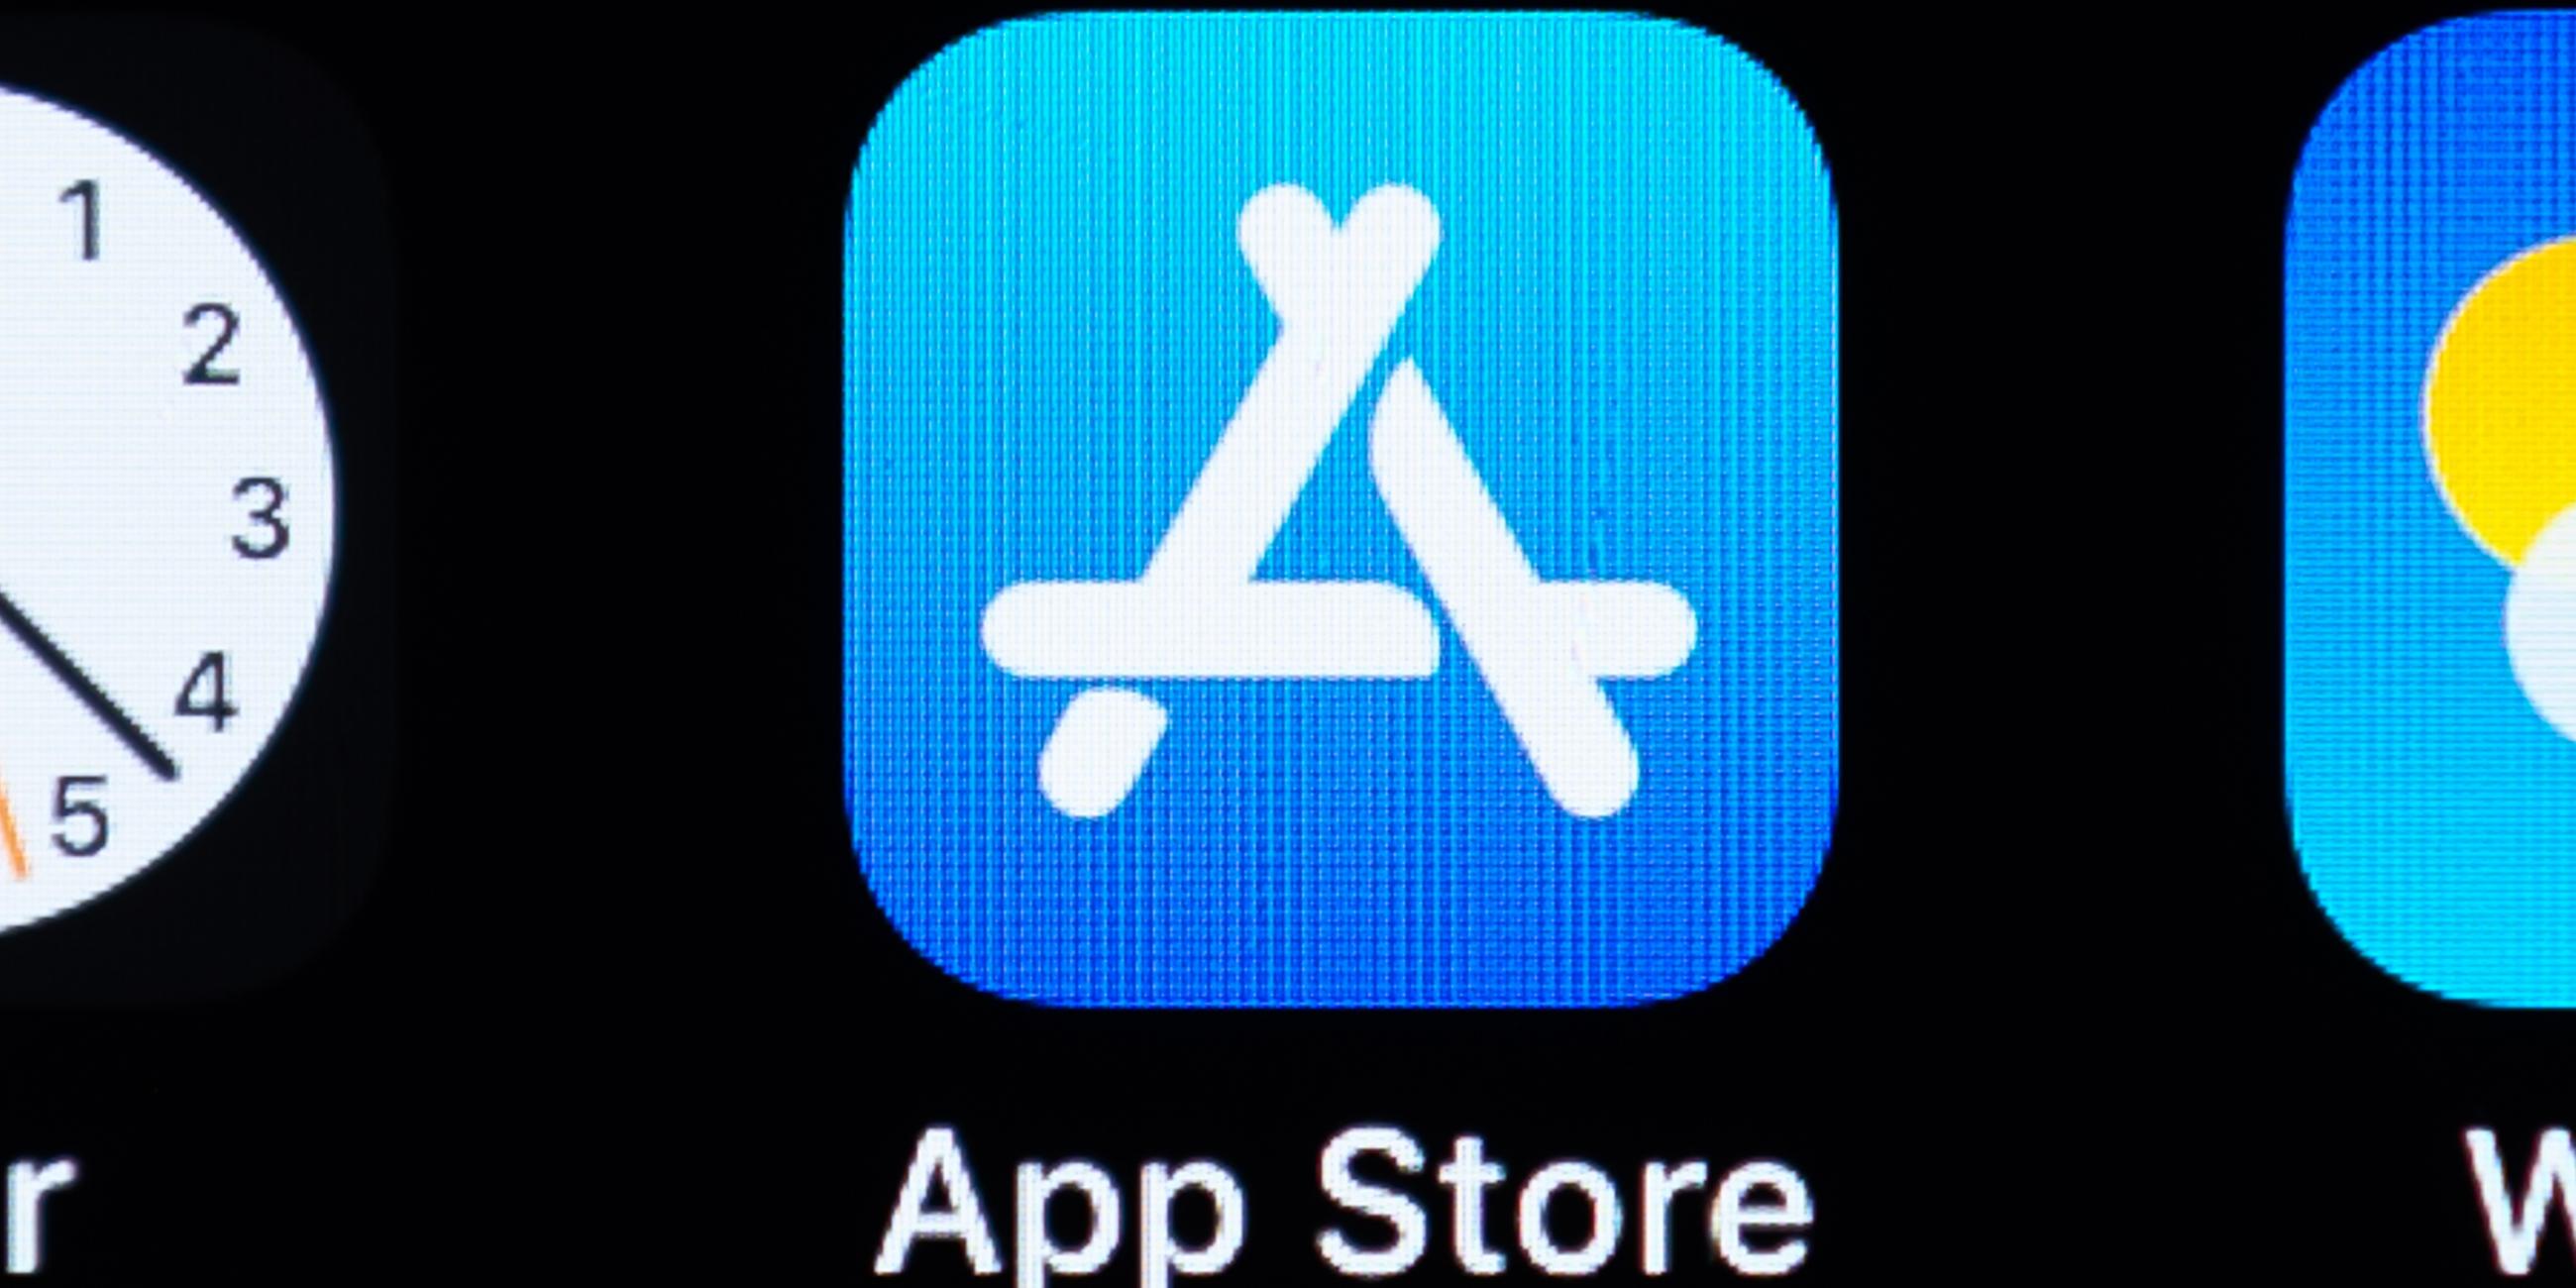 App Store auf einem Display